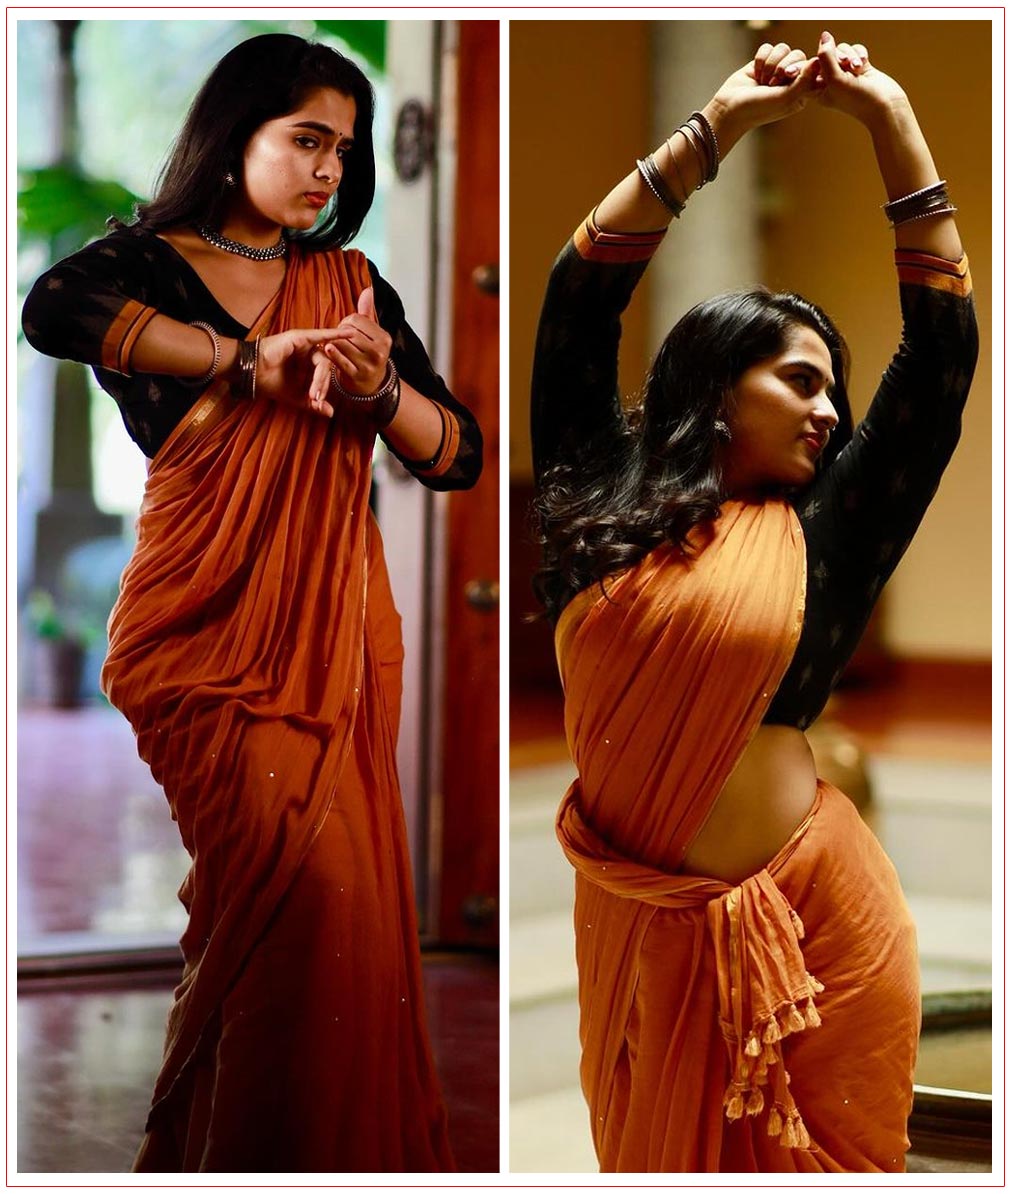  Kavya Kalyanram stunning in cotton red saree